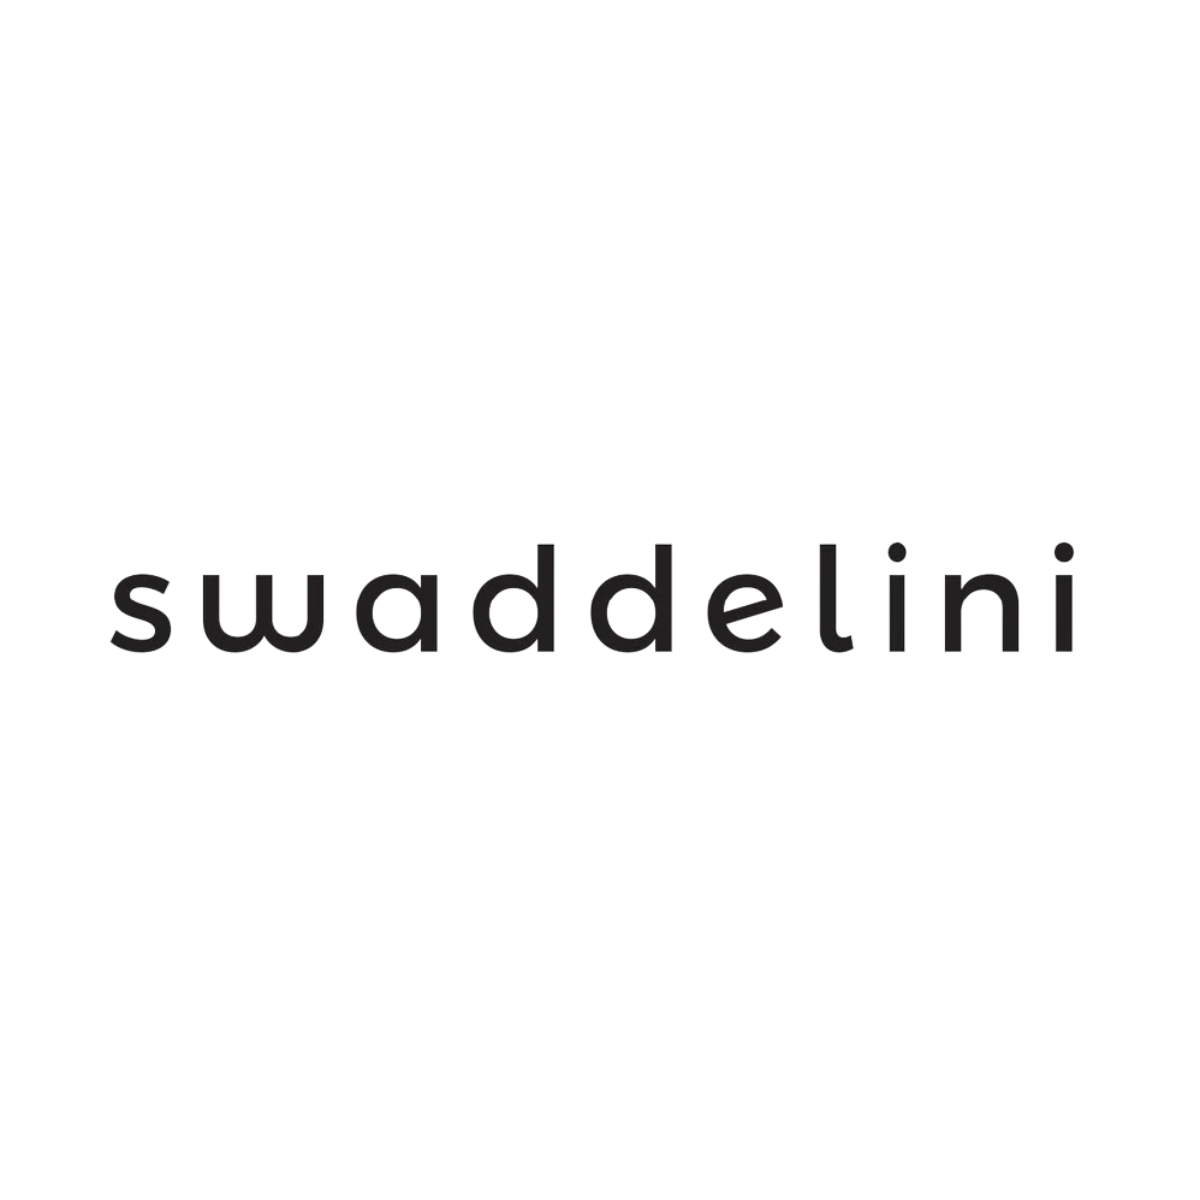 Swaddelini